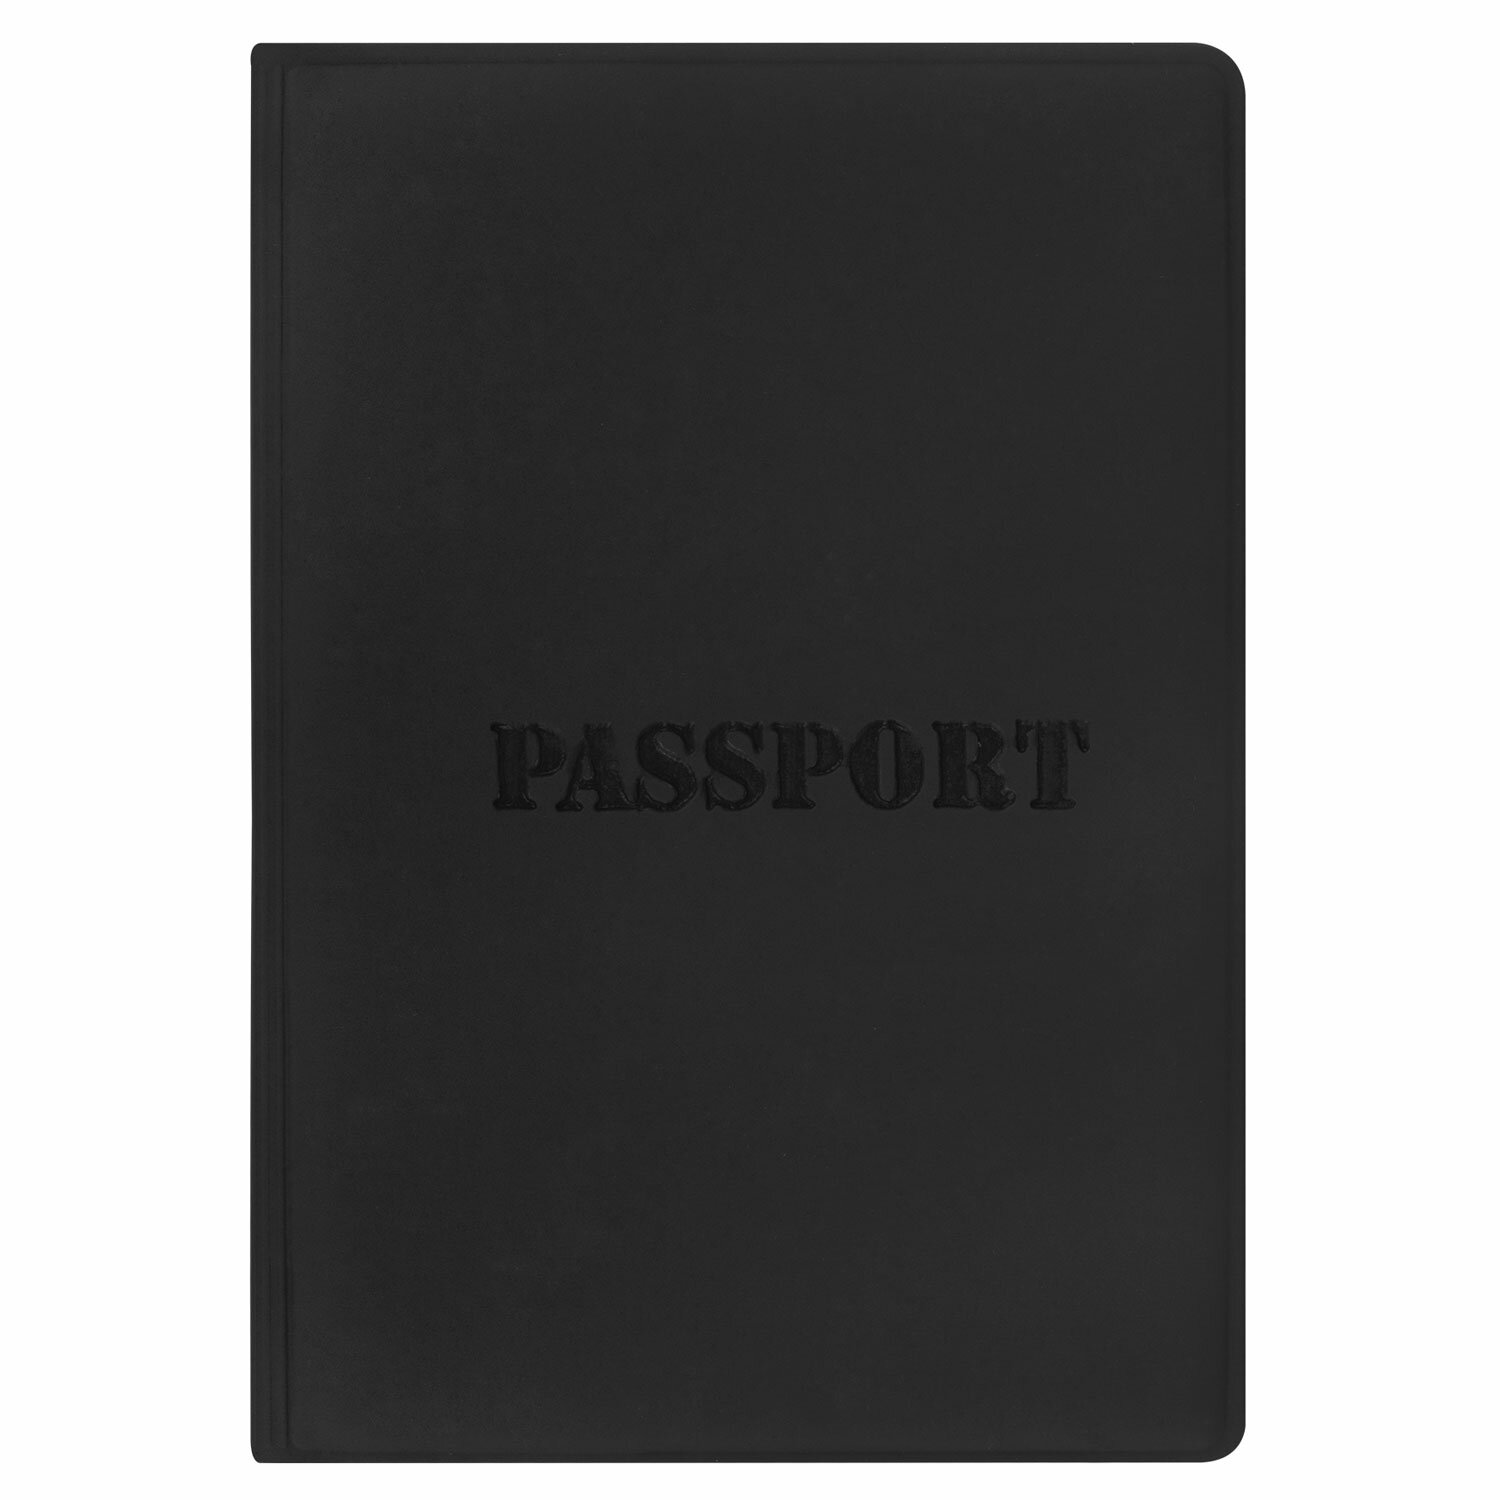 Обложка на паспорт Staff чехол - фото 4